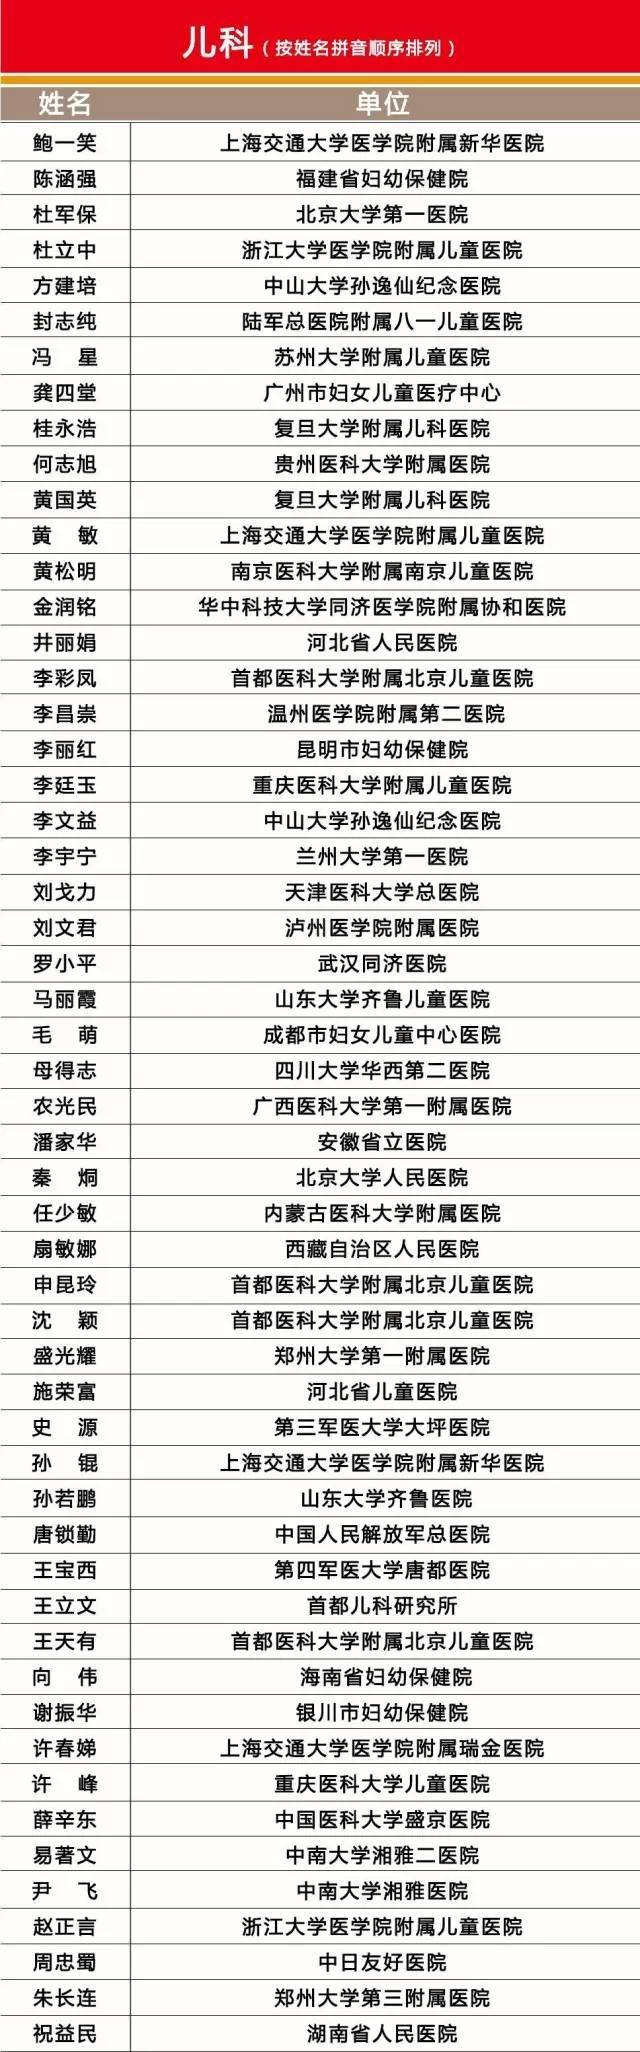 包含北京市海淀医院专家名单(今天/挂号资讯)的词条